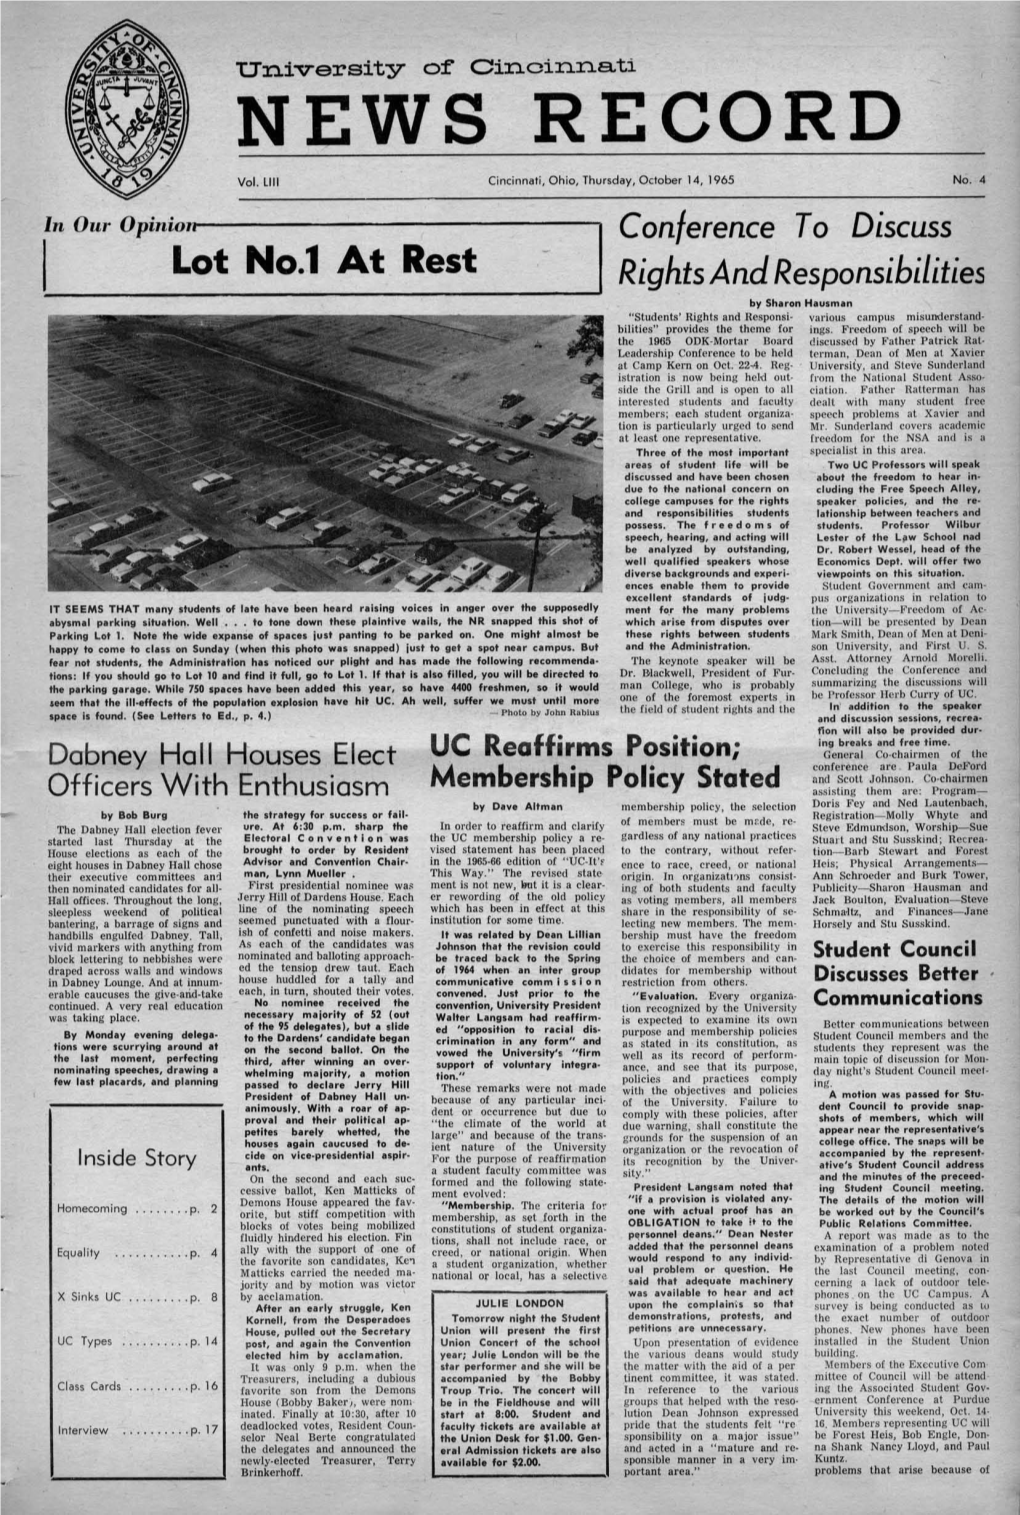 University of Cincinnati News Record. Thursday, October 14, 1965. Vol